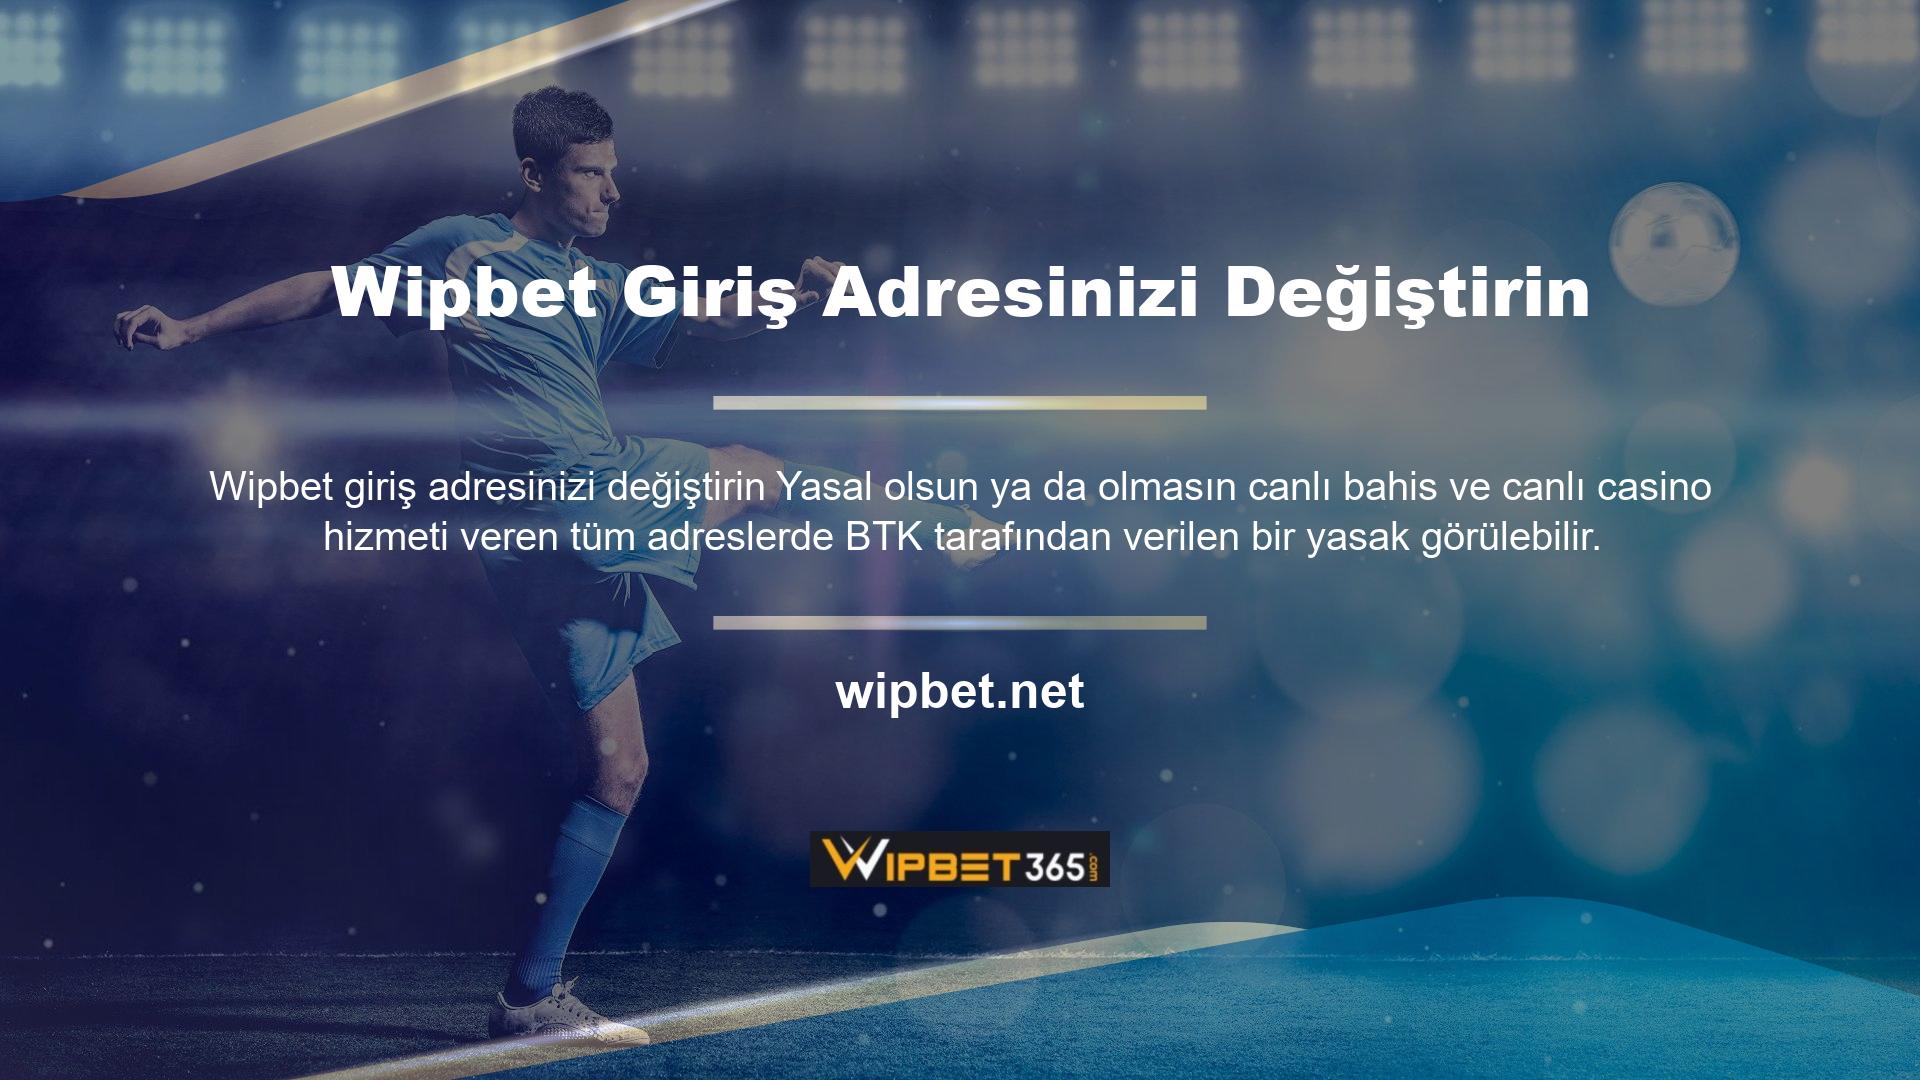 Wipbet web sitesi, giriş adresini güncelleyerek sorunu ilk günden itibaren düzeltti